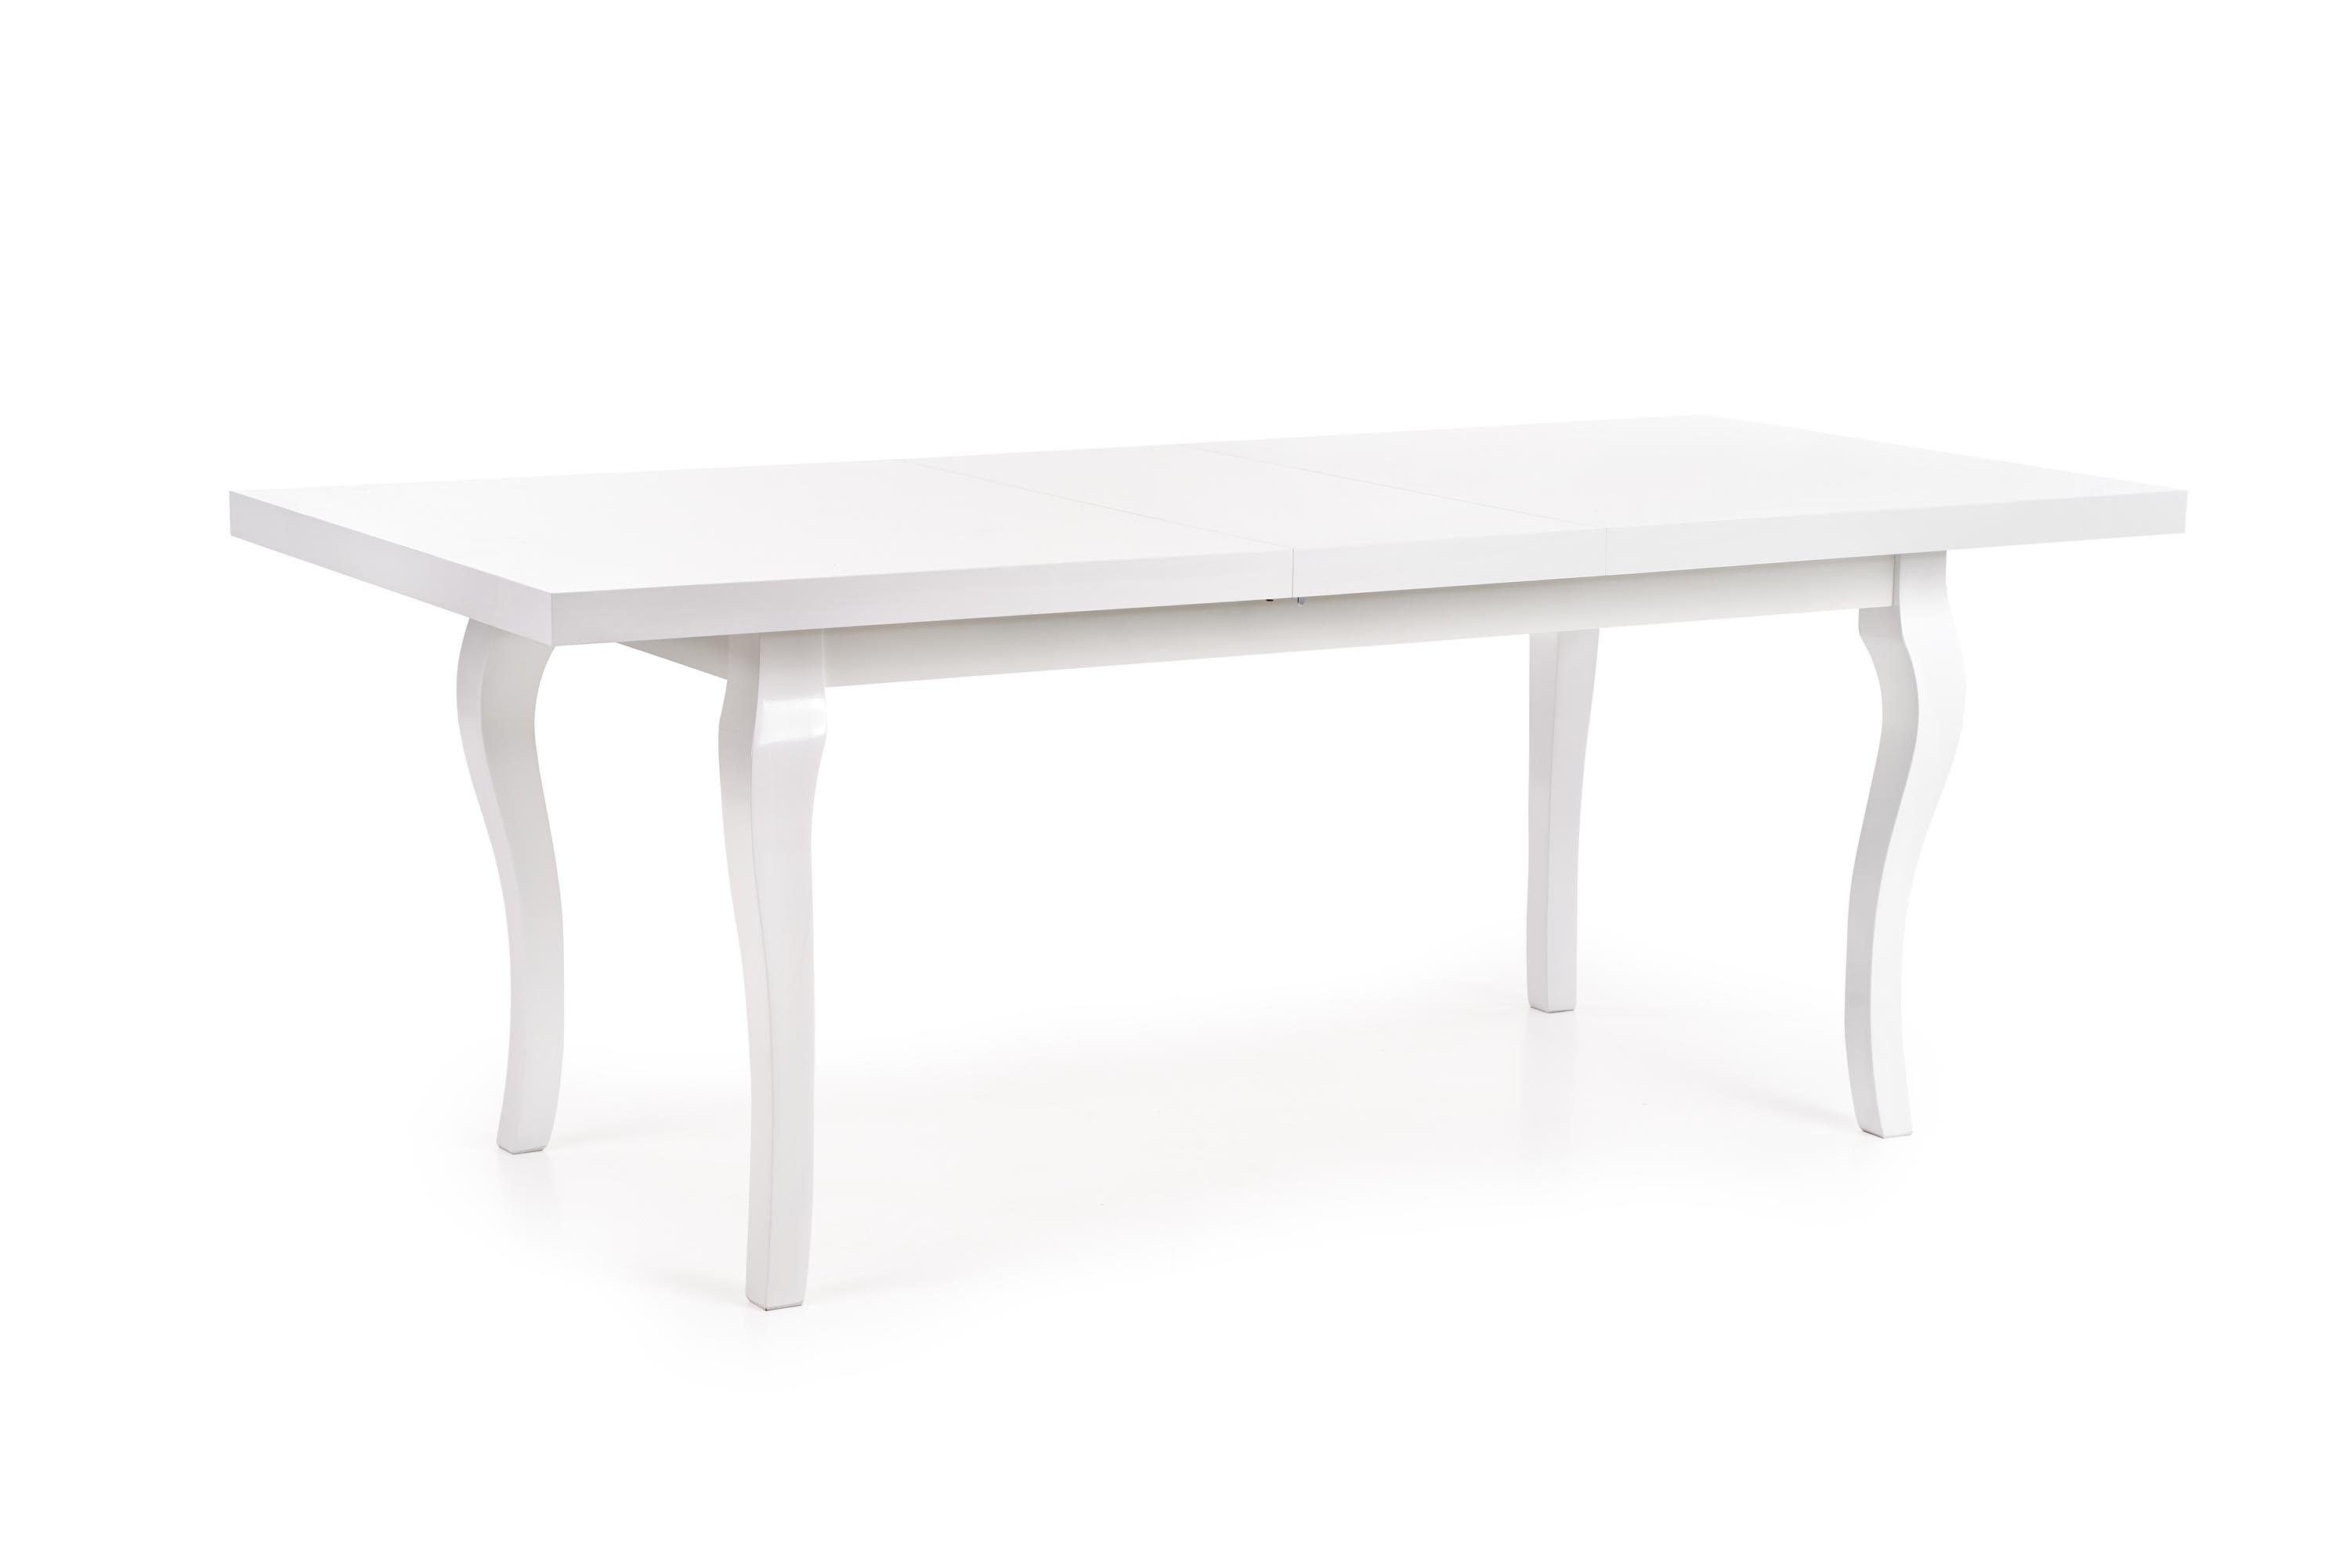 Rozkládací stůl Mozart 160-240 cm - bílá stůl mozart 160-240/90 - Bílý